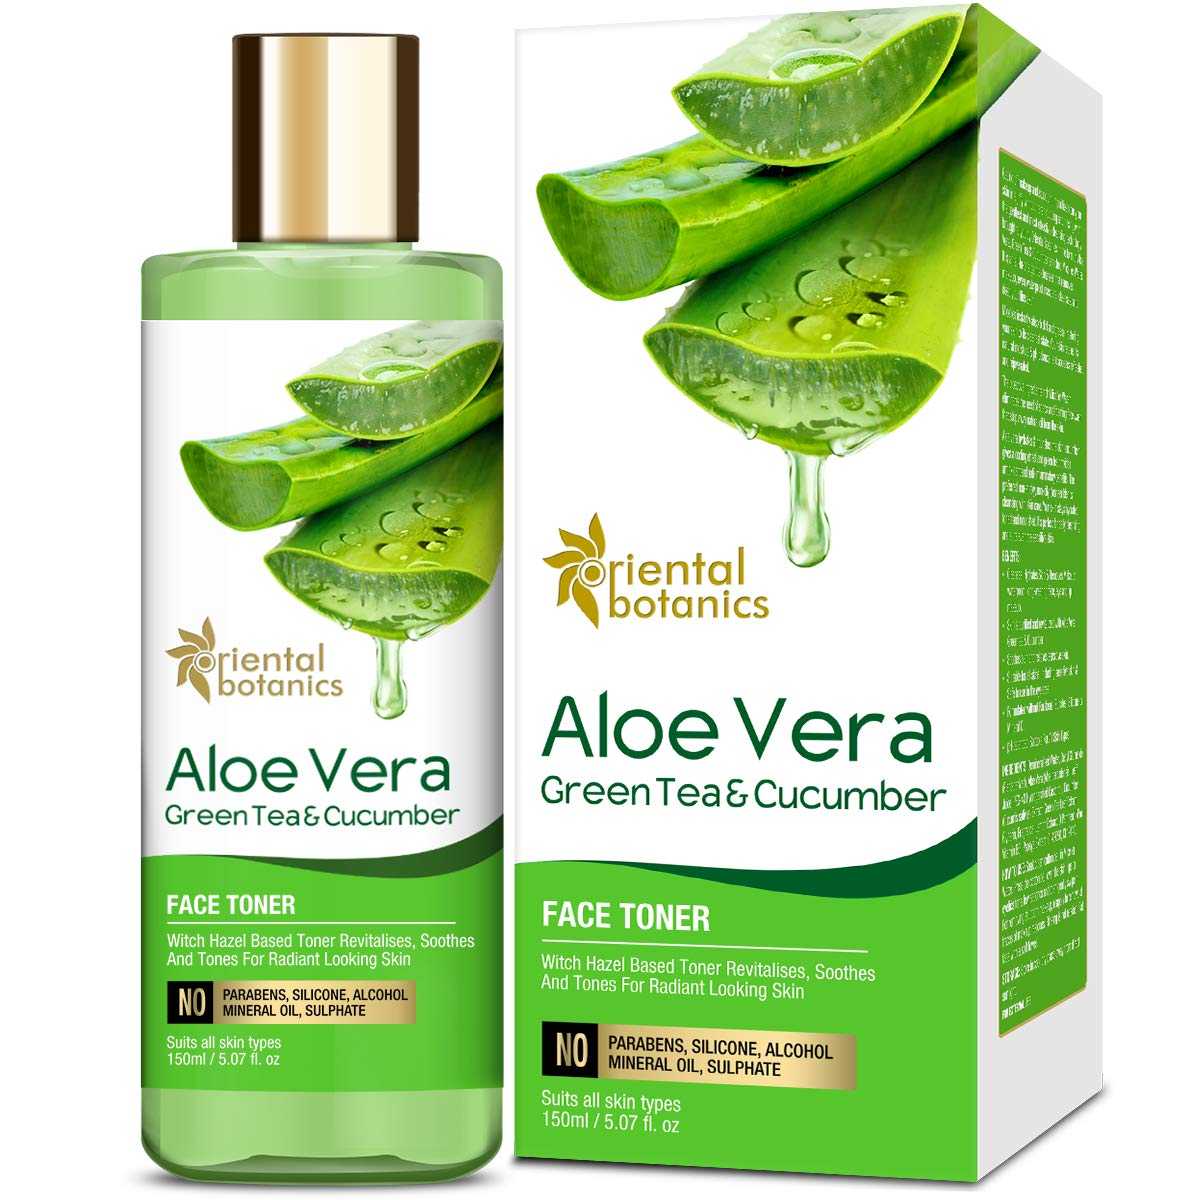 Oriental Botanics Aloe Vera, Green Tea & Cucumber Face Toner - Toner For Oily Skin